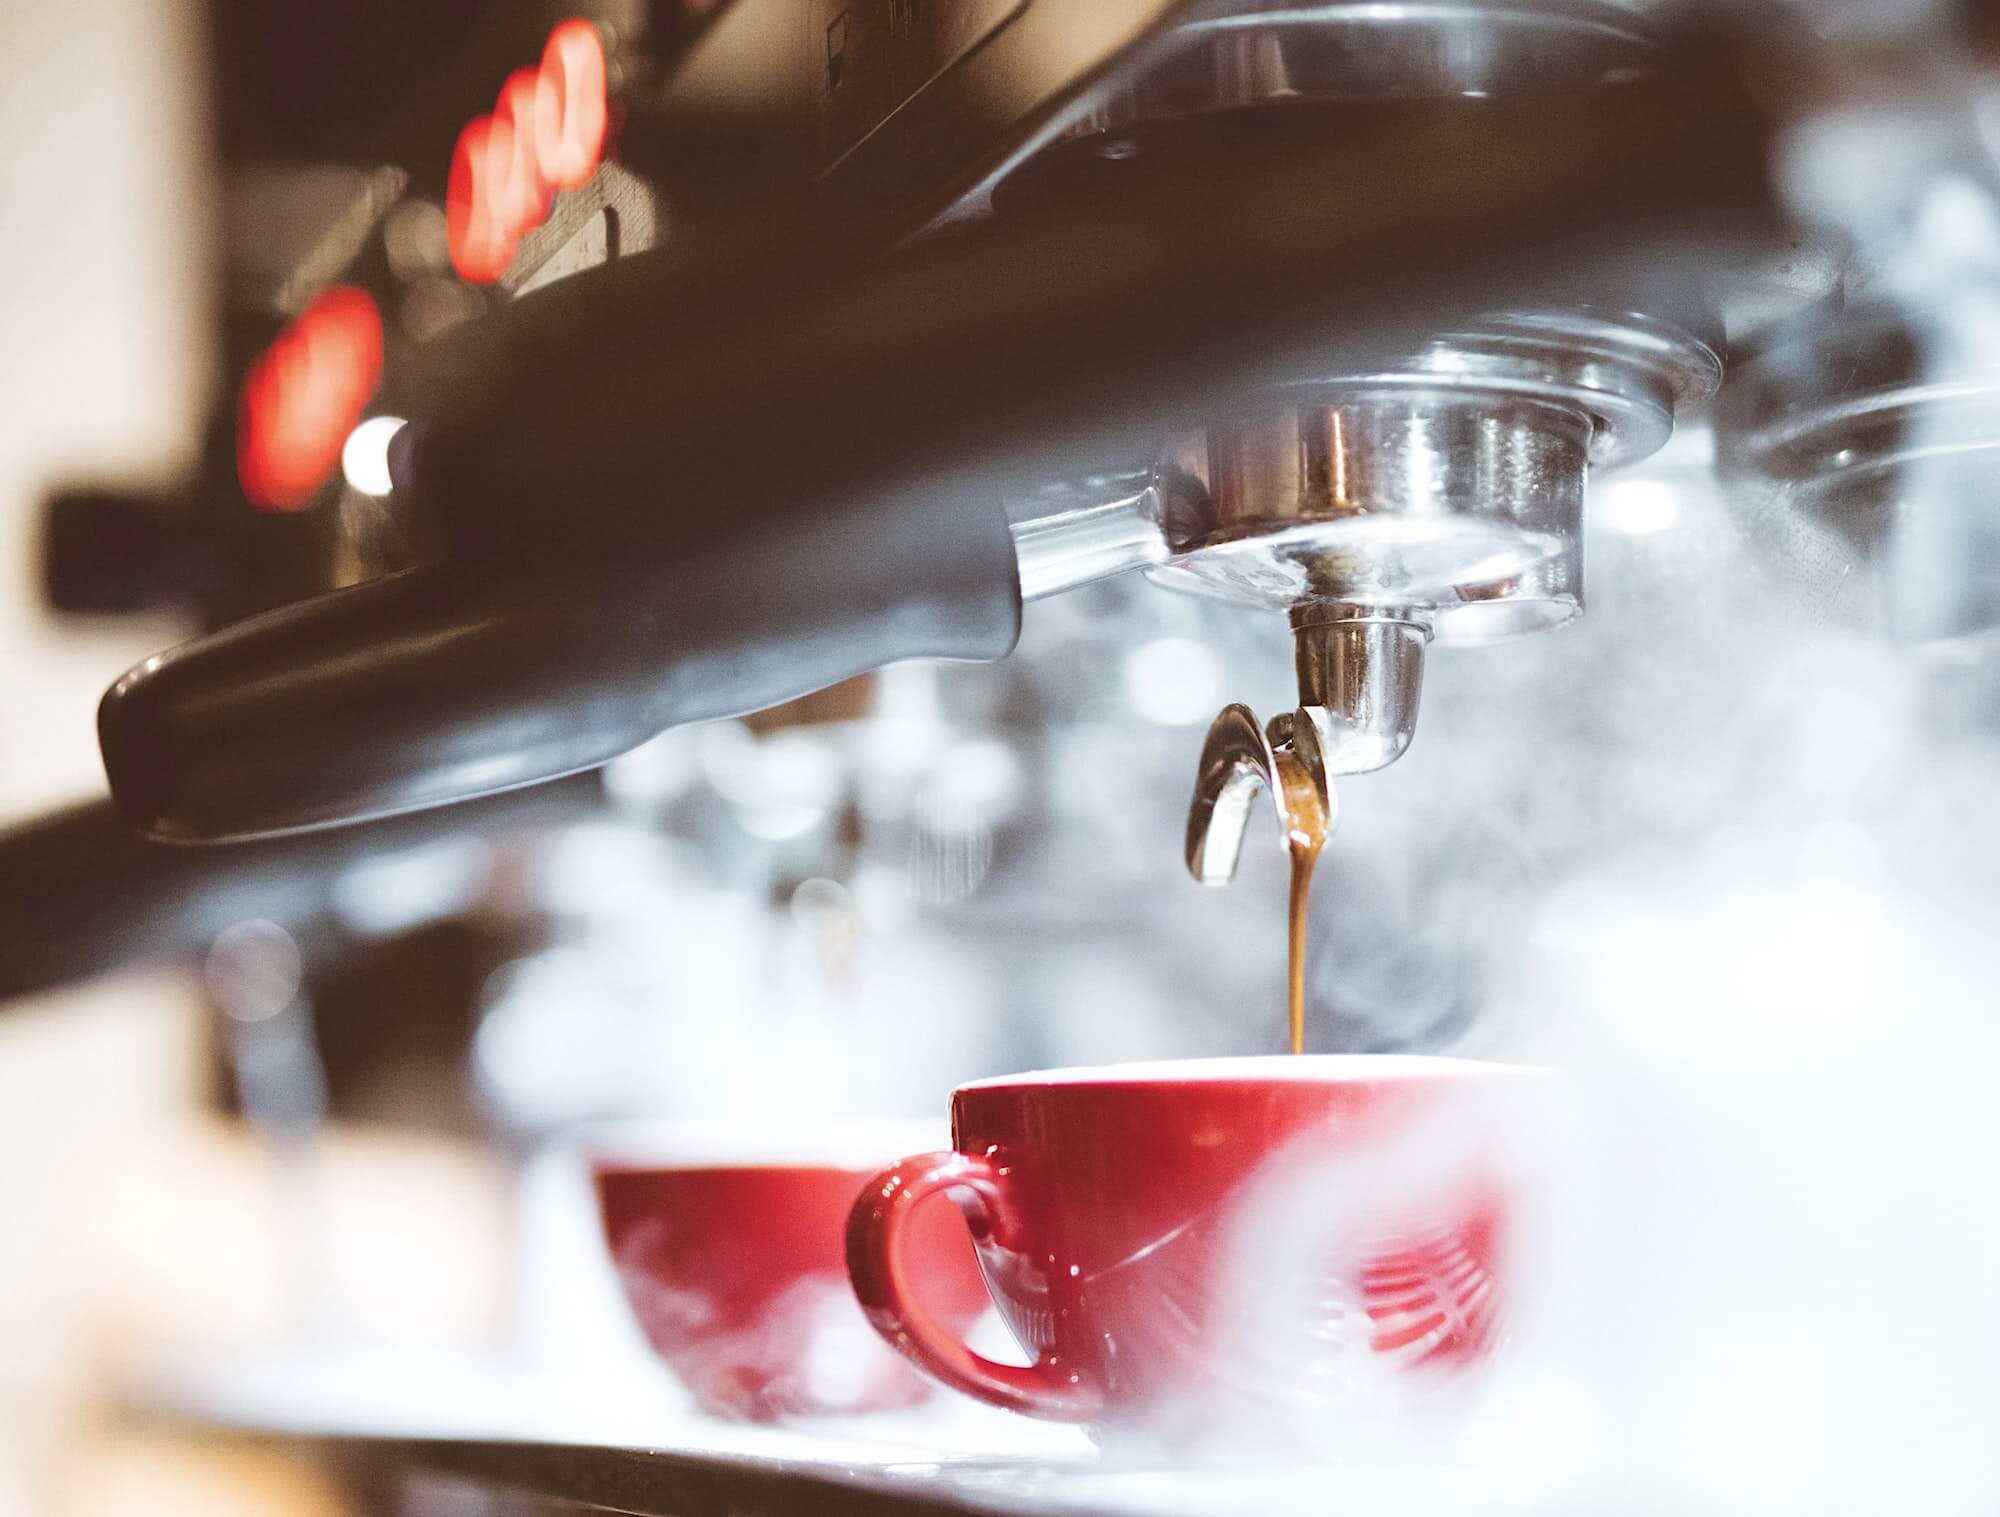 Приготовление капучино ресторанной кофе-машиной, разливающей напиток в красные чашки